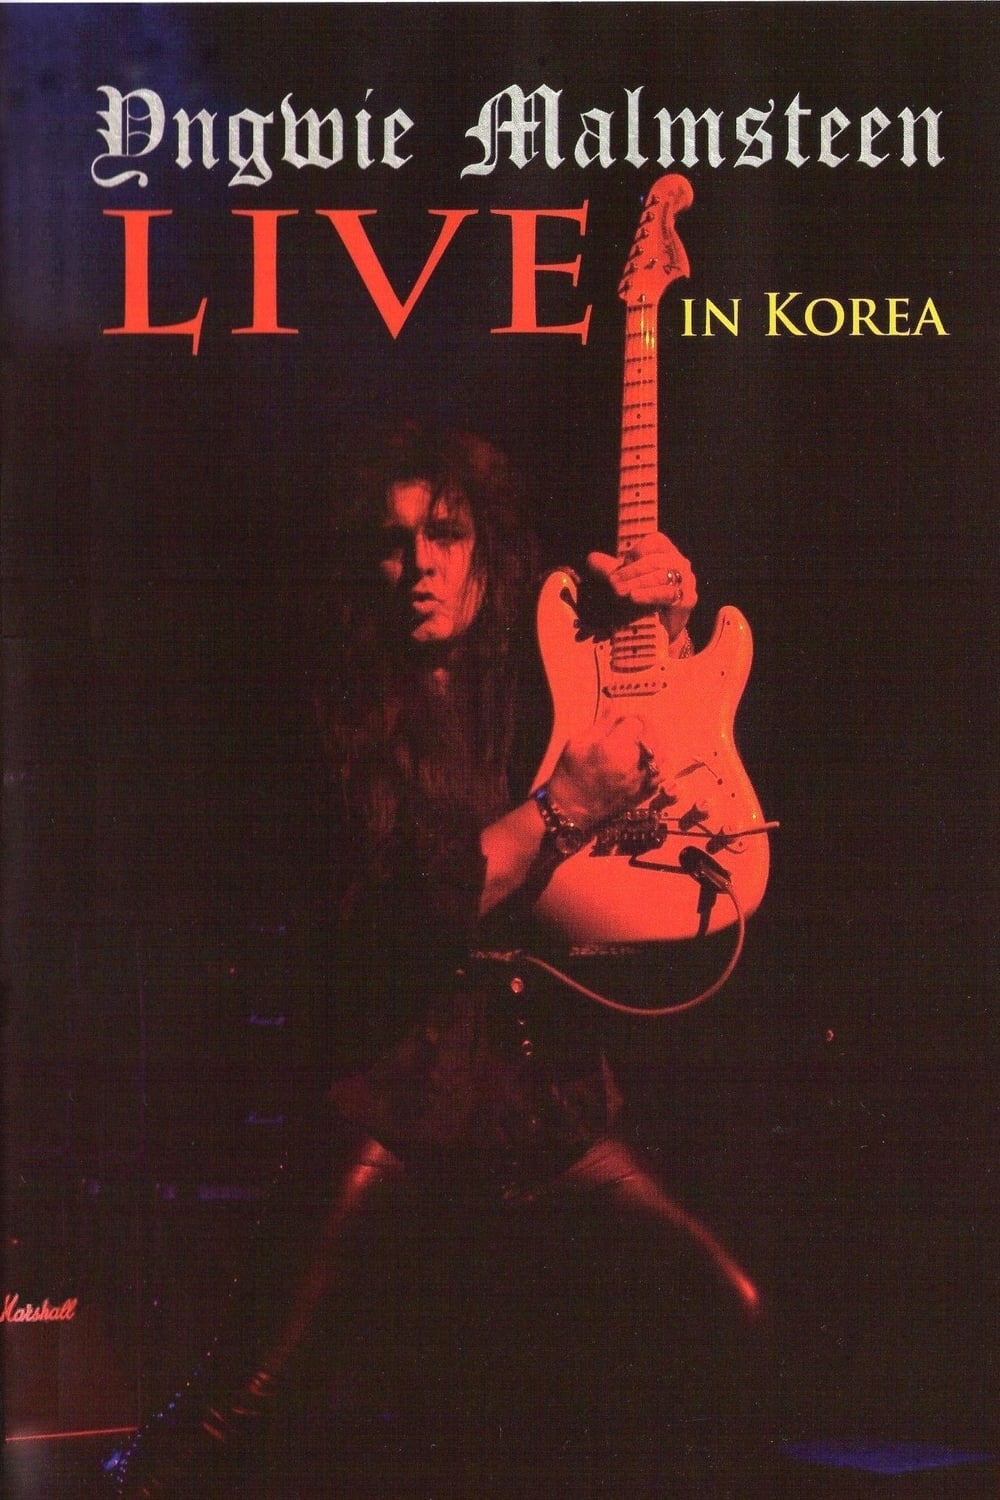 Yngwie Malmsteen: Live in Korea